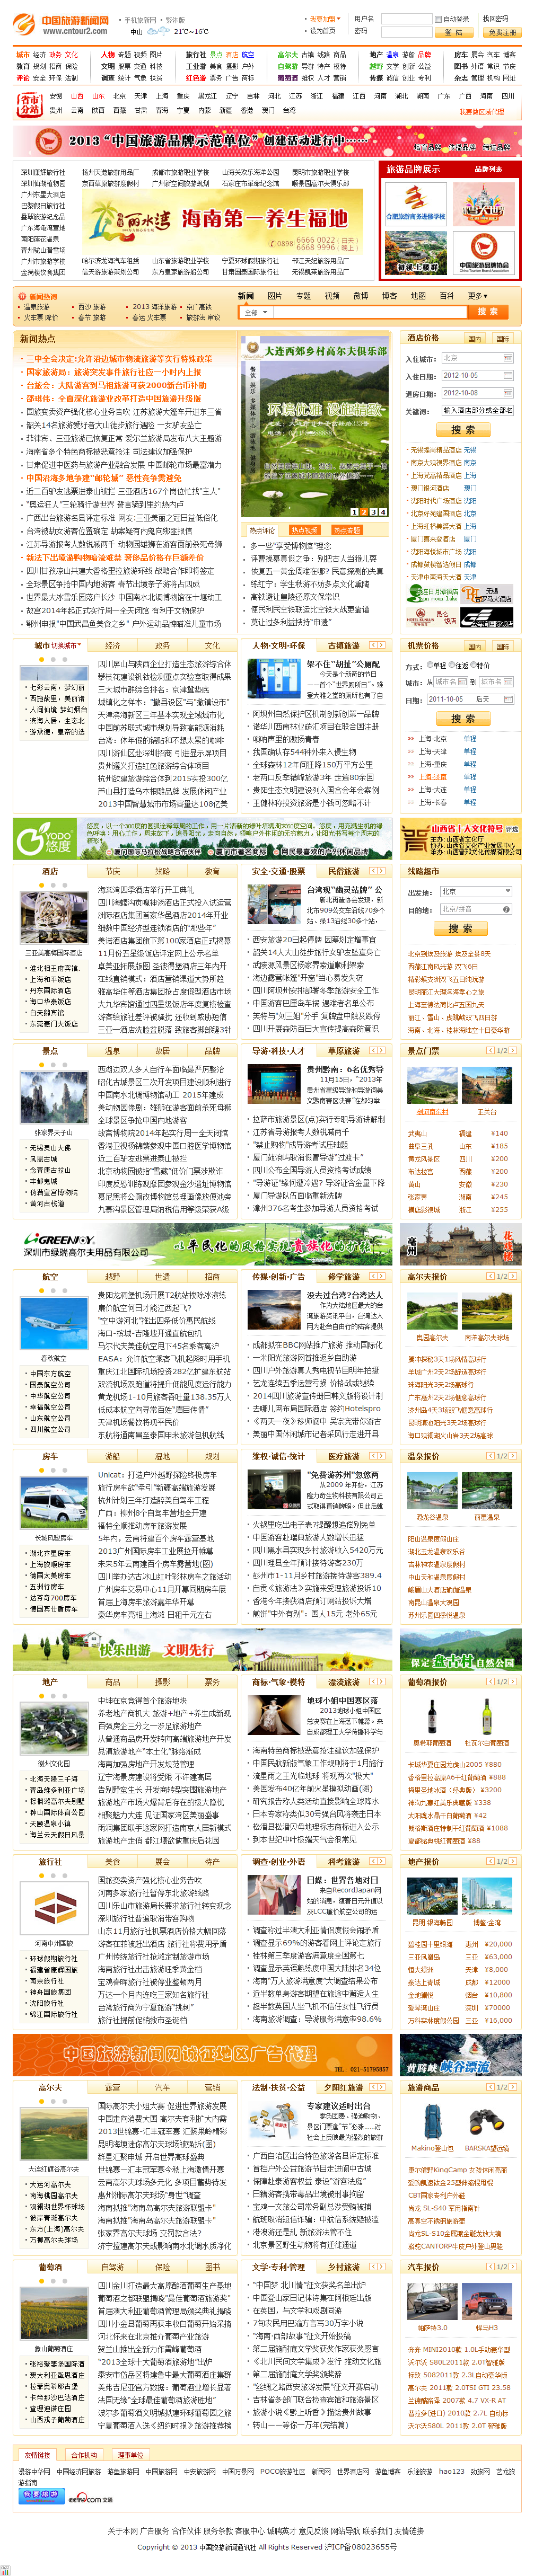 中国旅游新闻网――传播旅游资讯，促进业界融合